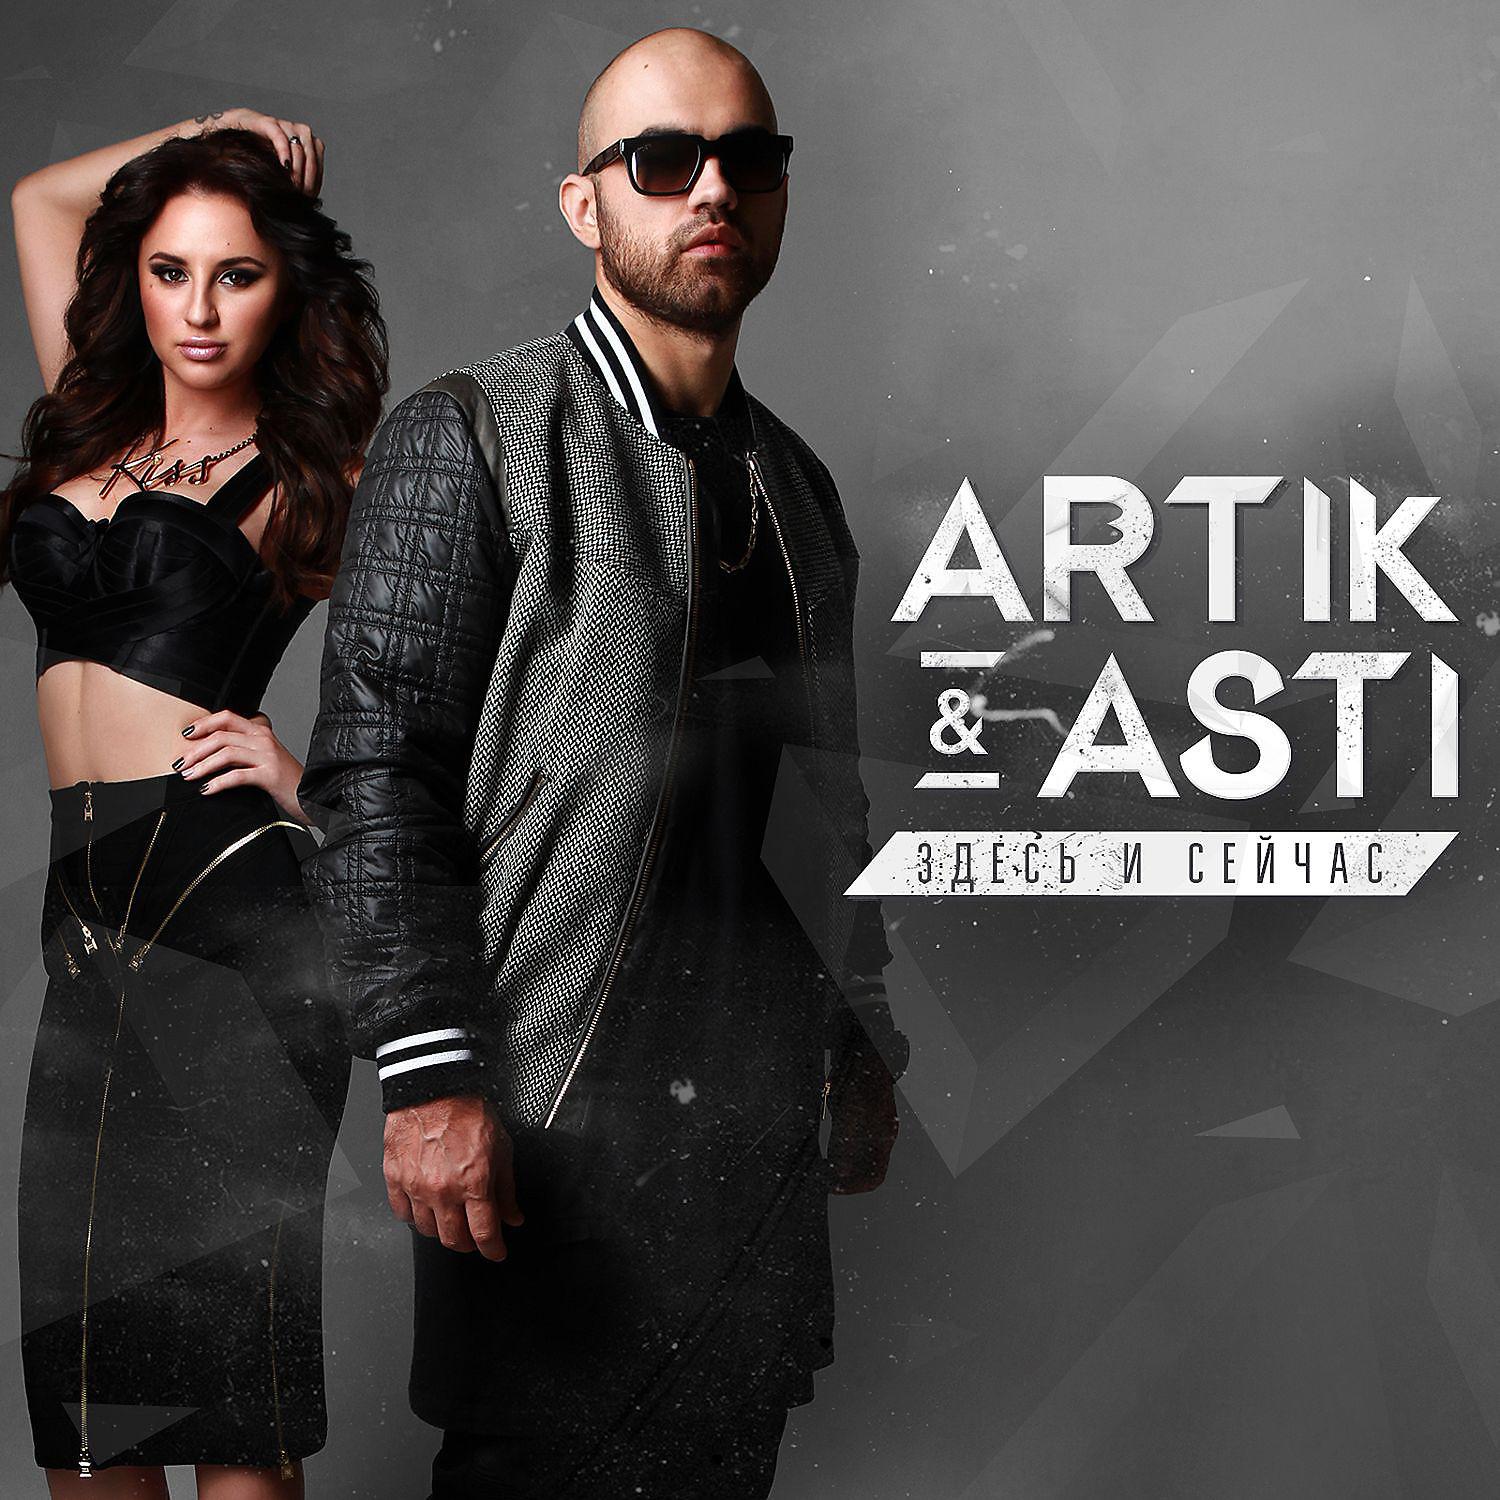 Дай новый новую музыку. Артик и Асти. Artik Asti здесь и сейчас 2015. Artik Asti обложка. Артик и Асти 2014.